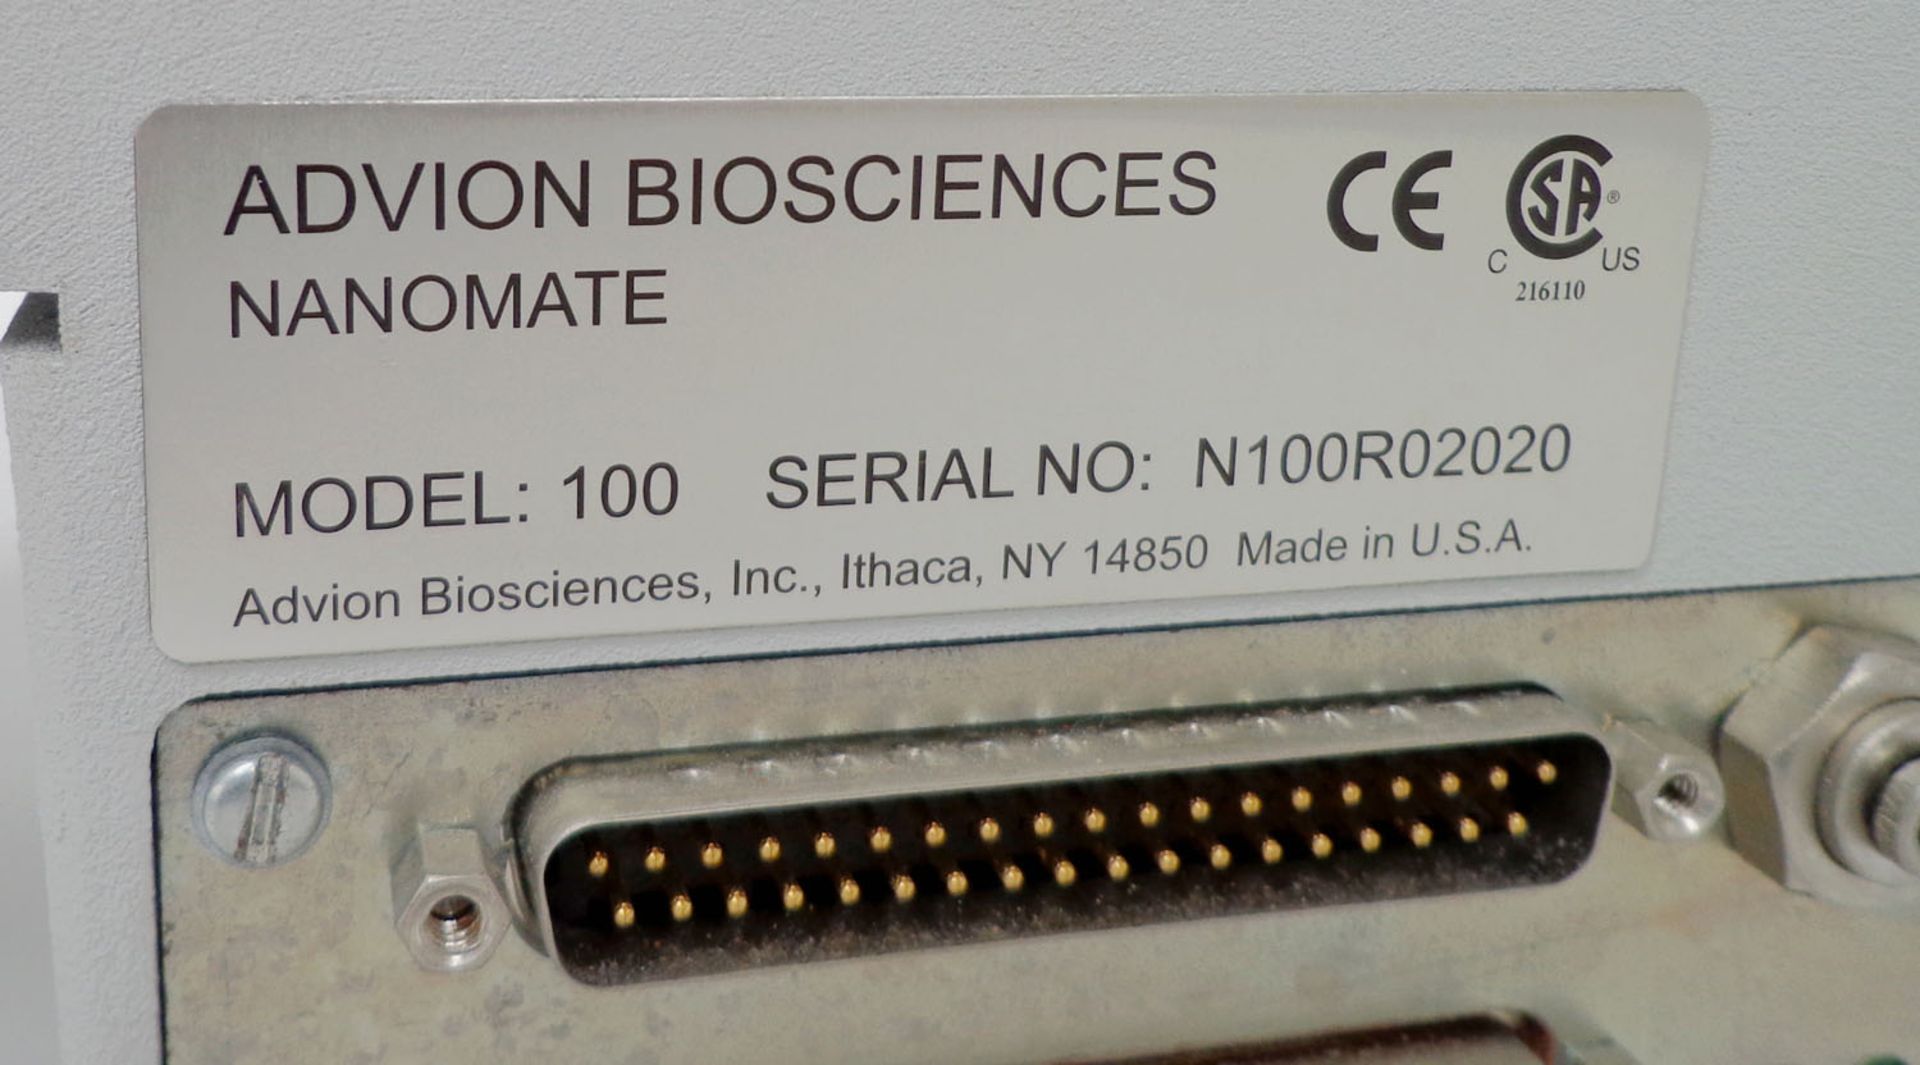 Advion Bio Sciences, Model 100 S/N N100R02020 - Image 7 of 8